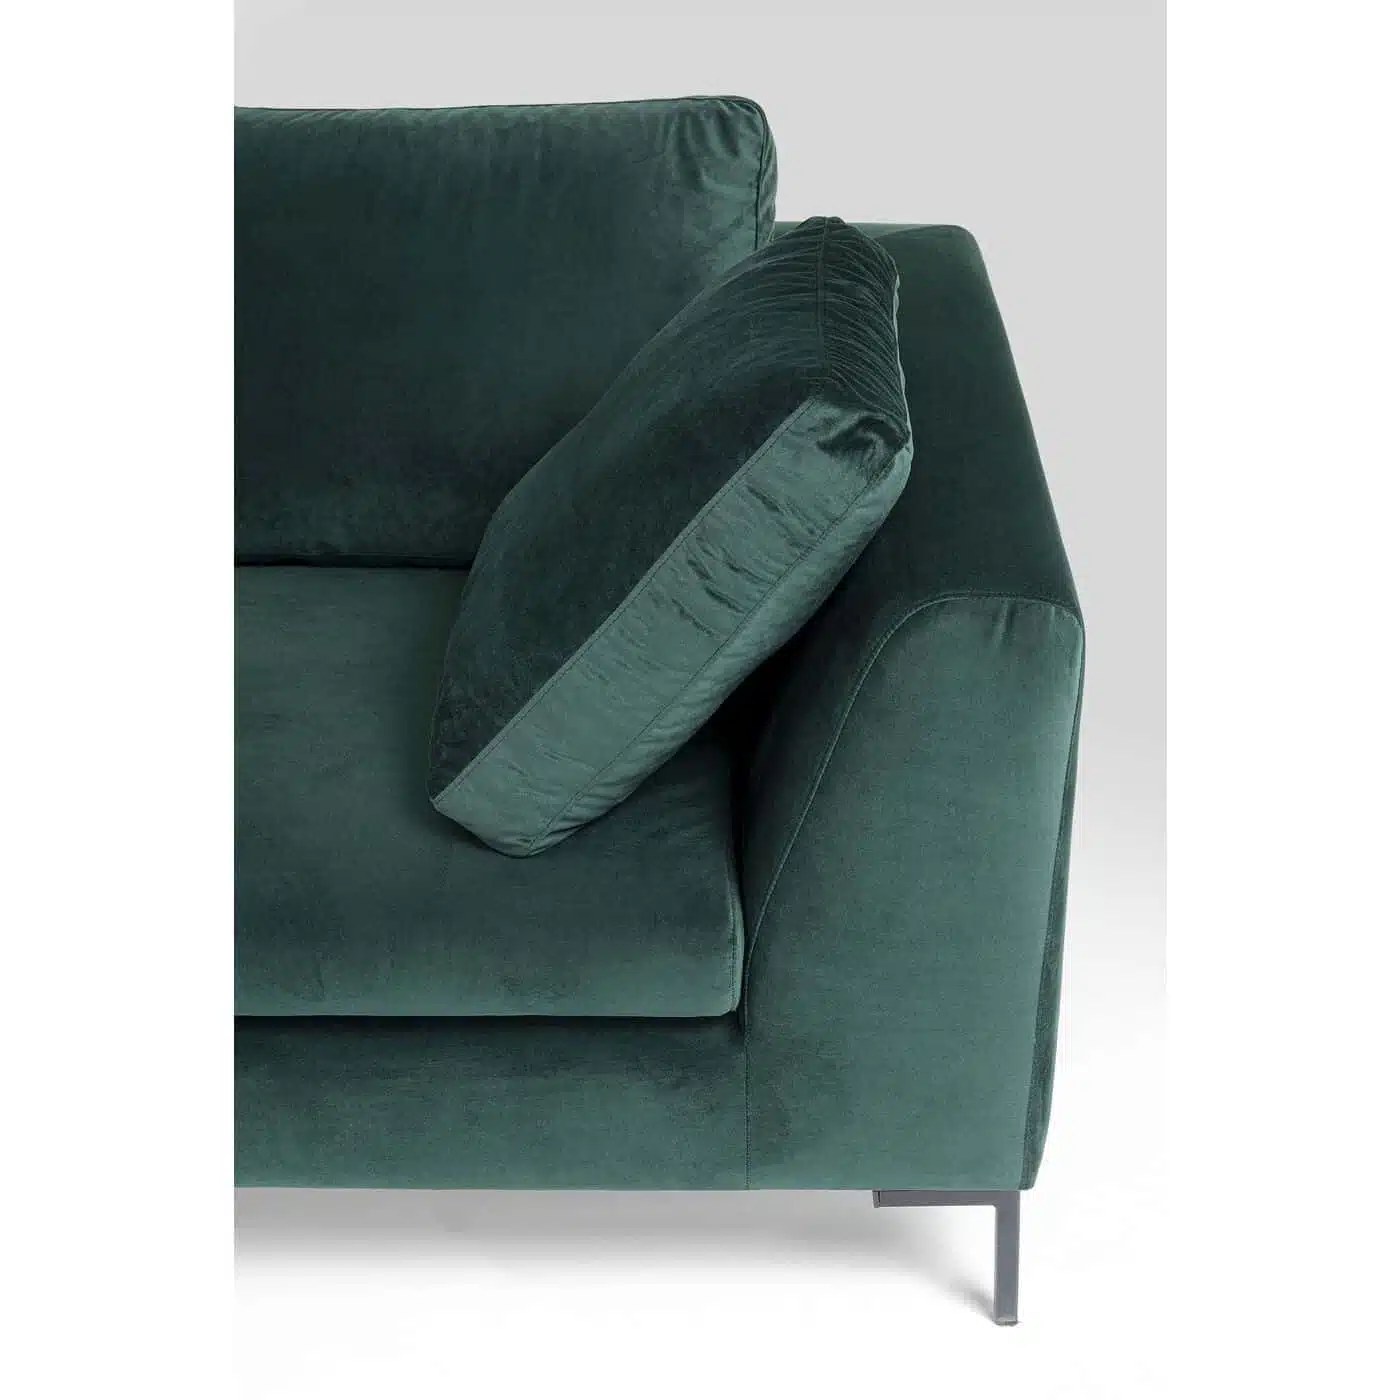 Canapé d'angle Gianna 270cm gauche velours vert foncé pieds acier Kare Design